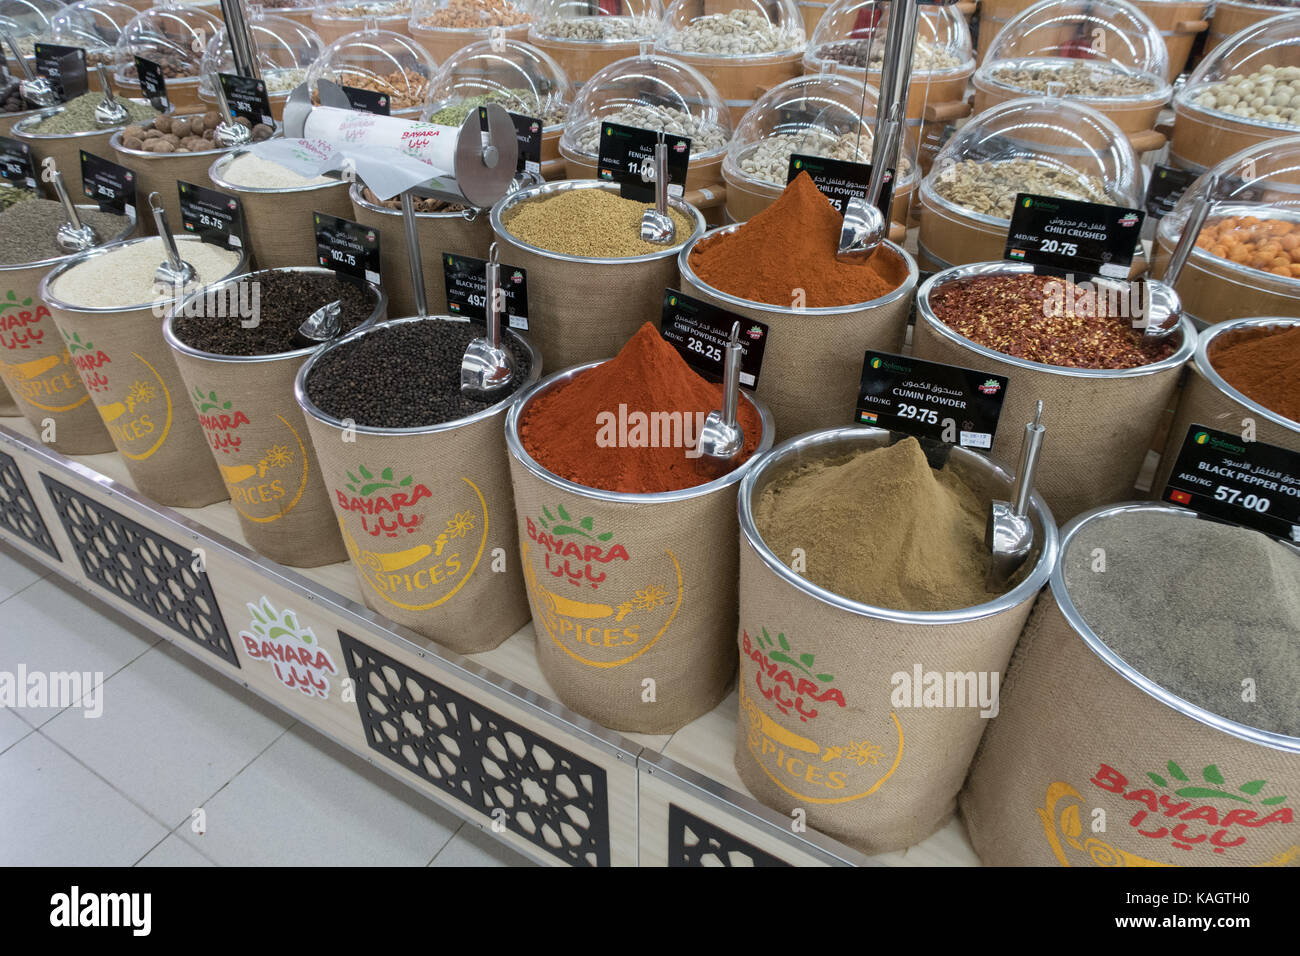 Gewürze in einem Supermarkt Stockfotografie - Alamy